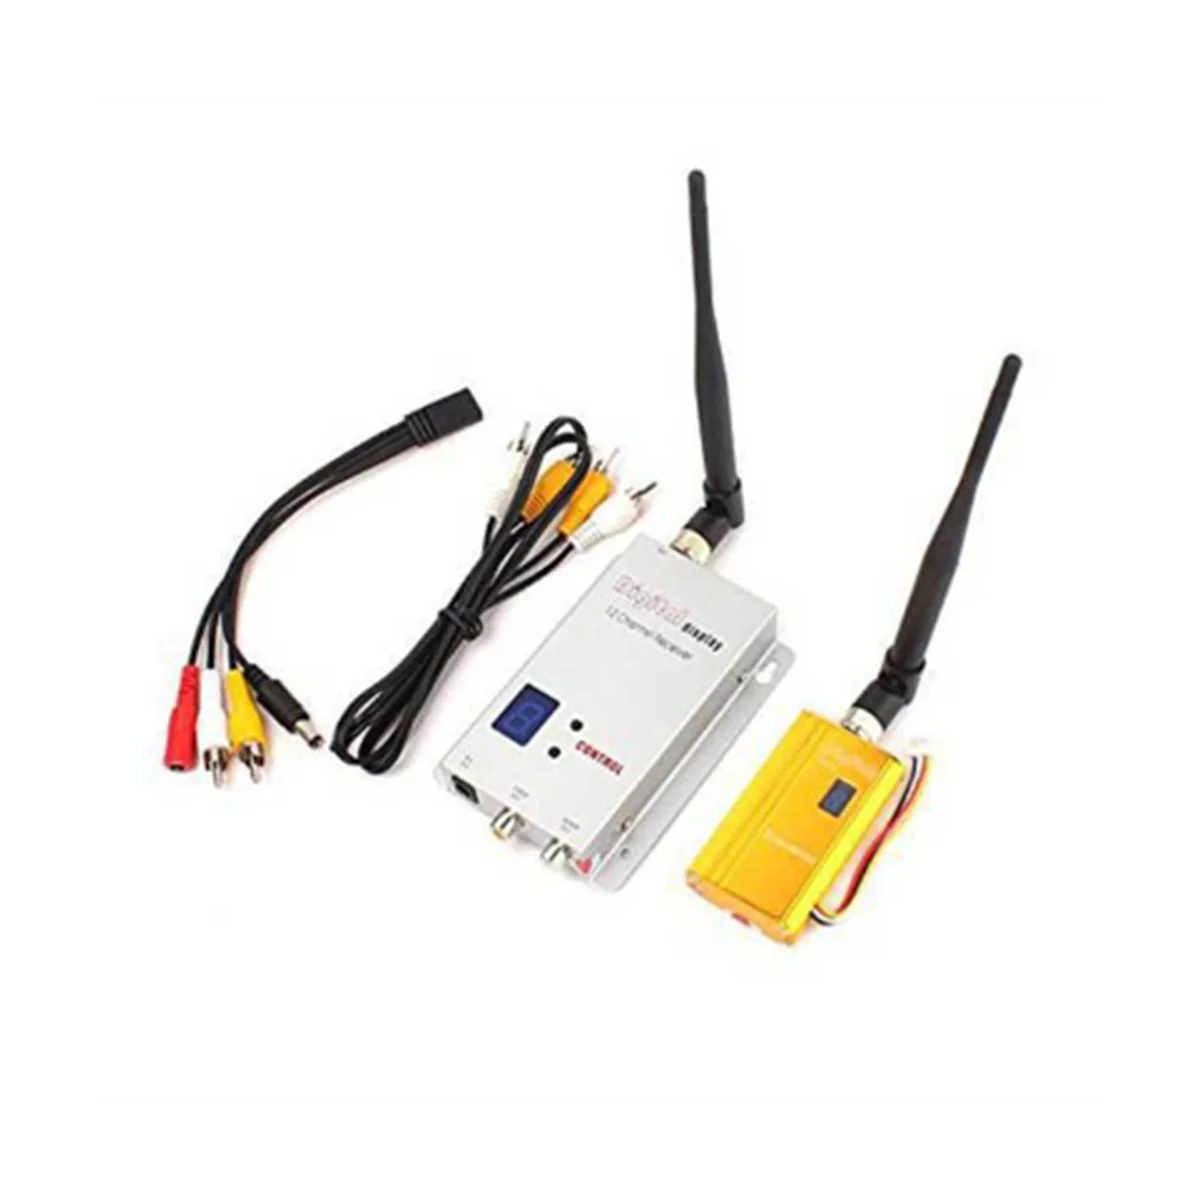 

FPV 1,2 ГГц 1,2G 8CH 1500 МВт беспроводной AV передатчик ТВ Аудио Видео приемник Combo для QAV250 250 FPV RC(A)